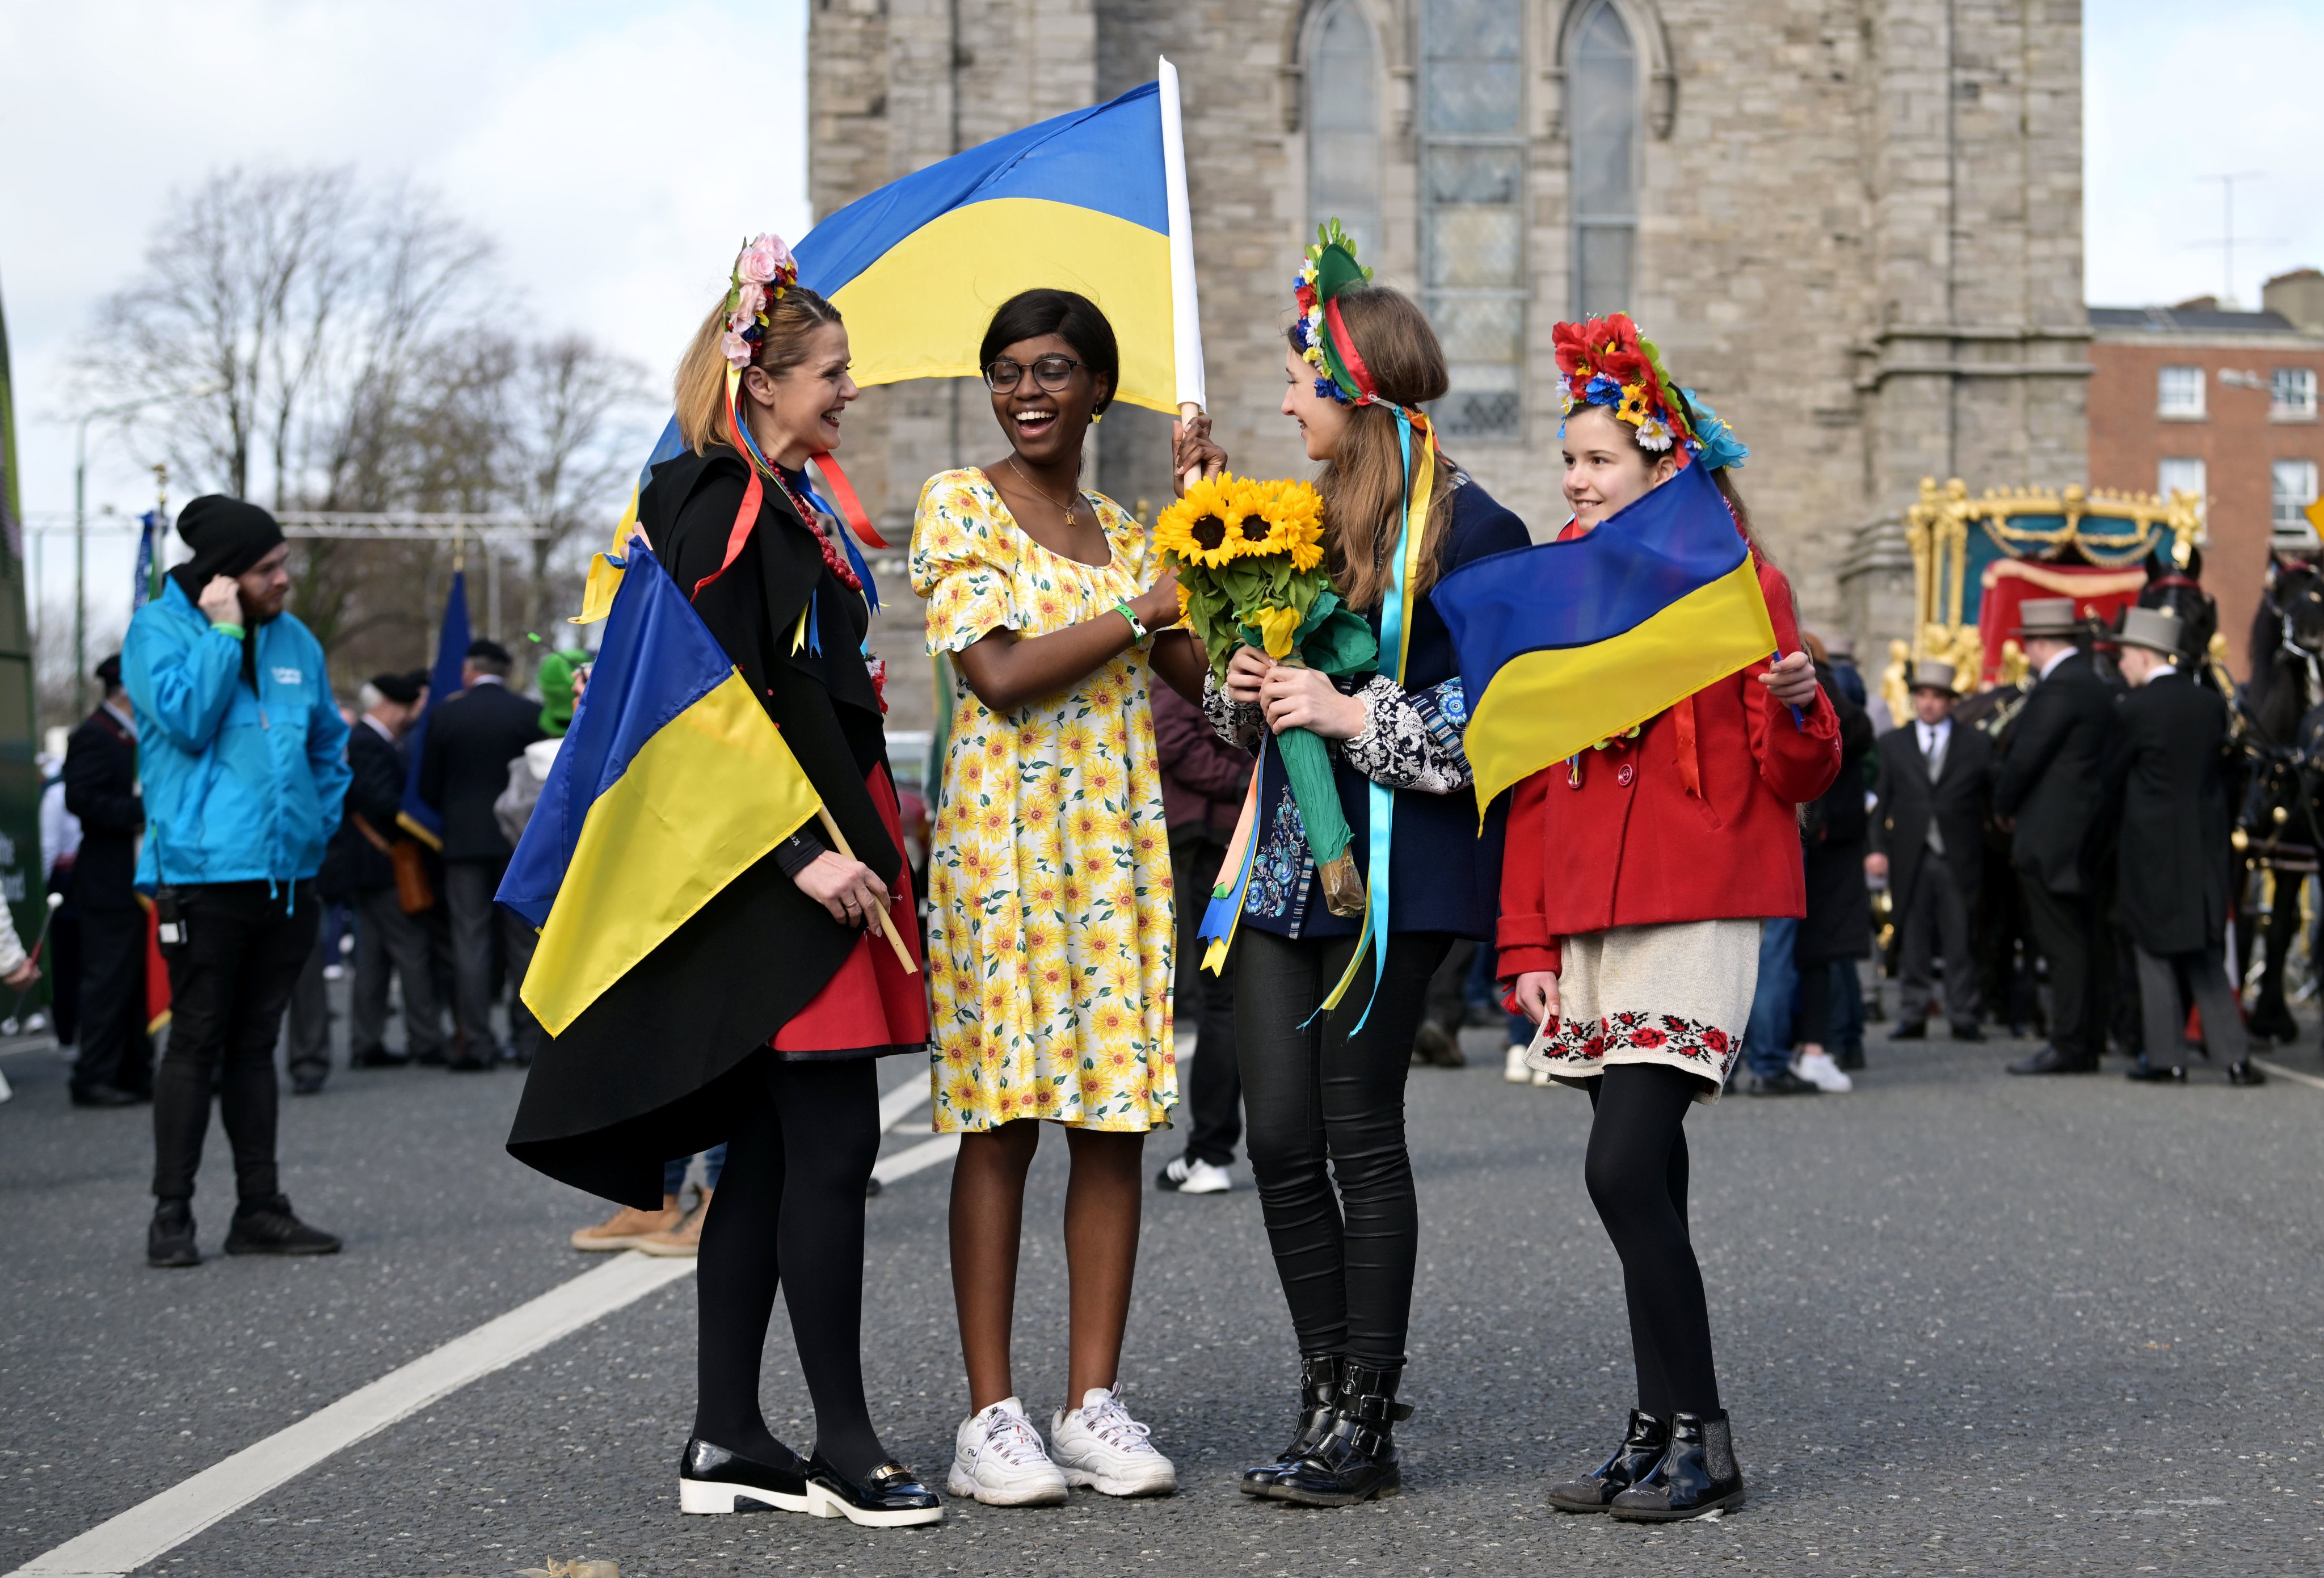 Durante a celebração do Dia de São Patrícia em Dublin, a comunidade ucraniana aproveitou o momento para enviar uma mensagem de apoio à Ucrânia